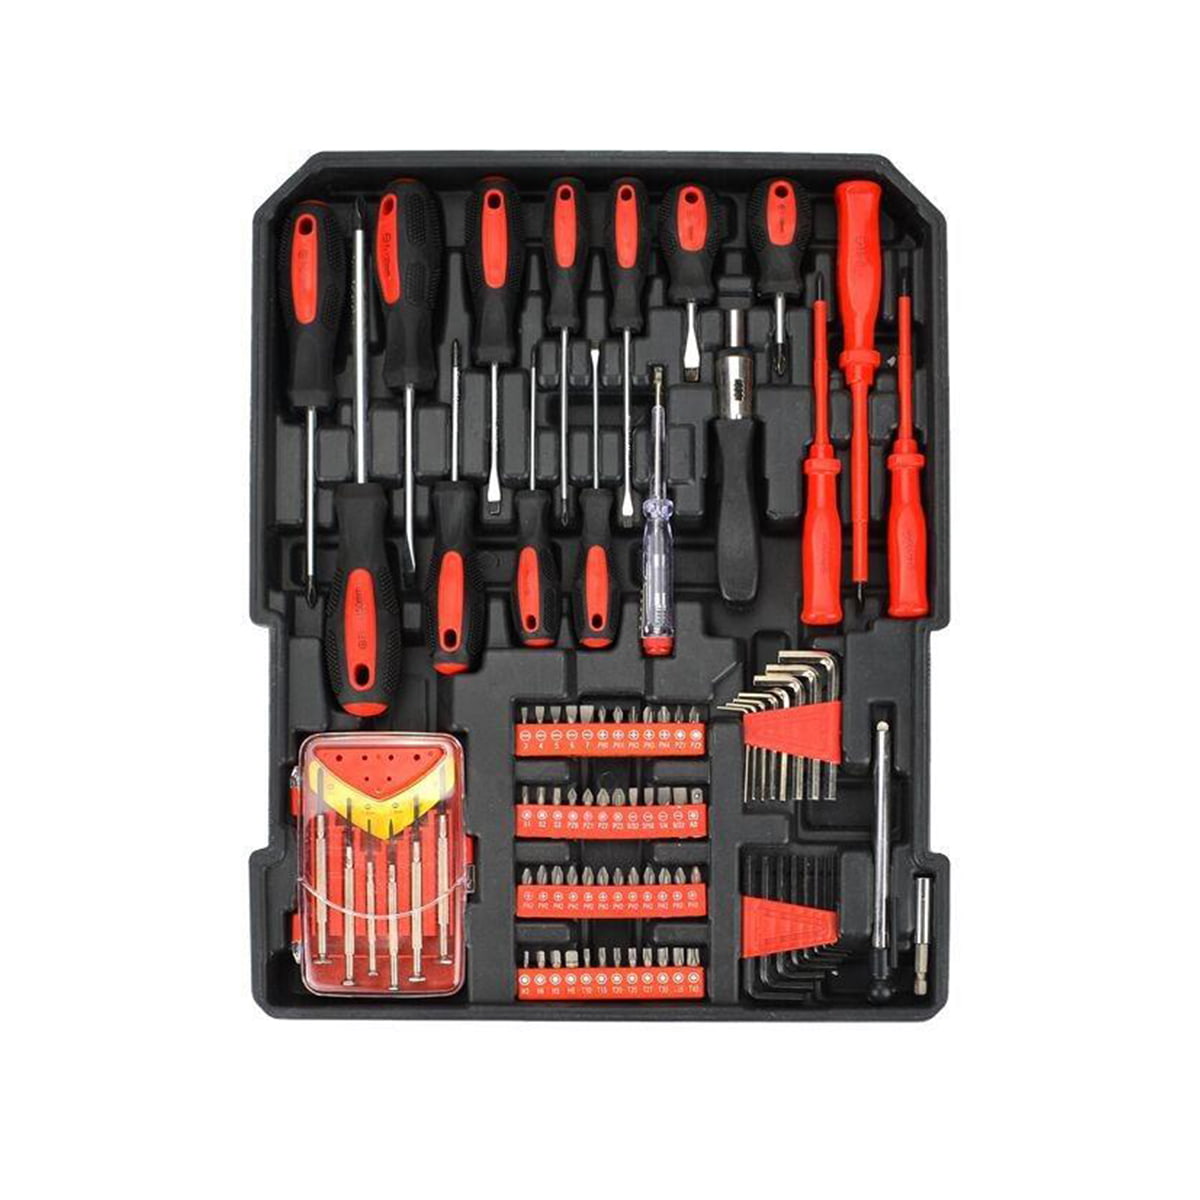 499 kpl Ferramentas Professional Hardware Automotive Tool Socket Kit de Reparao de Automobile Tools Set